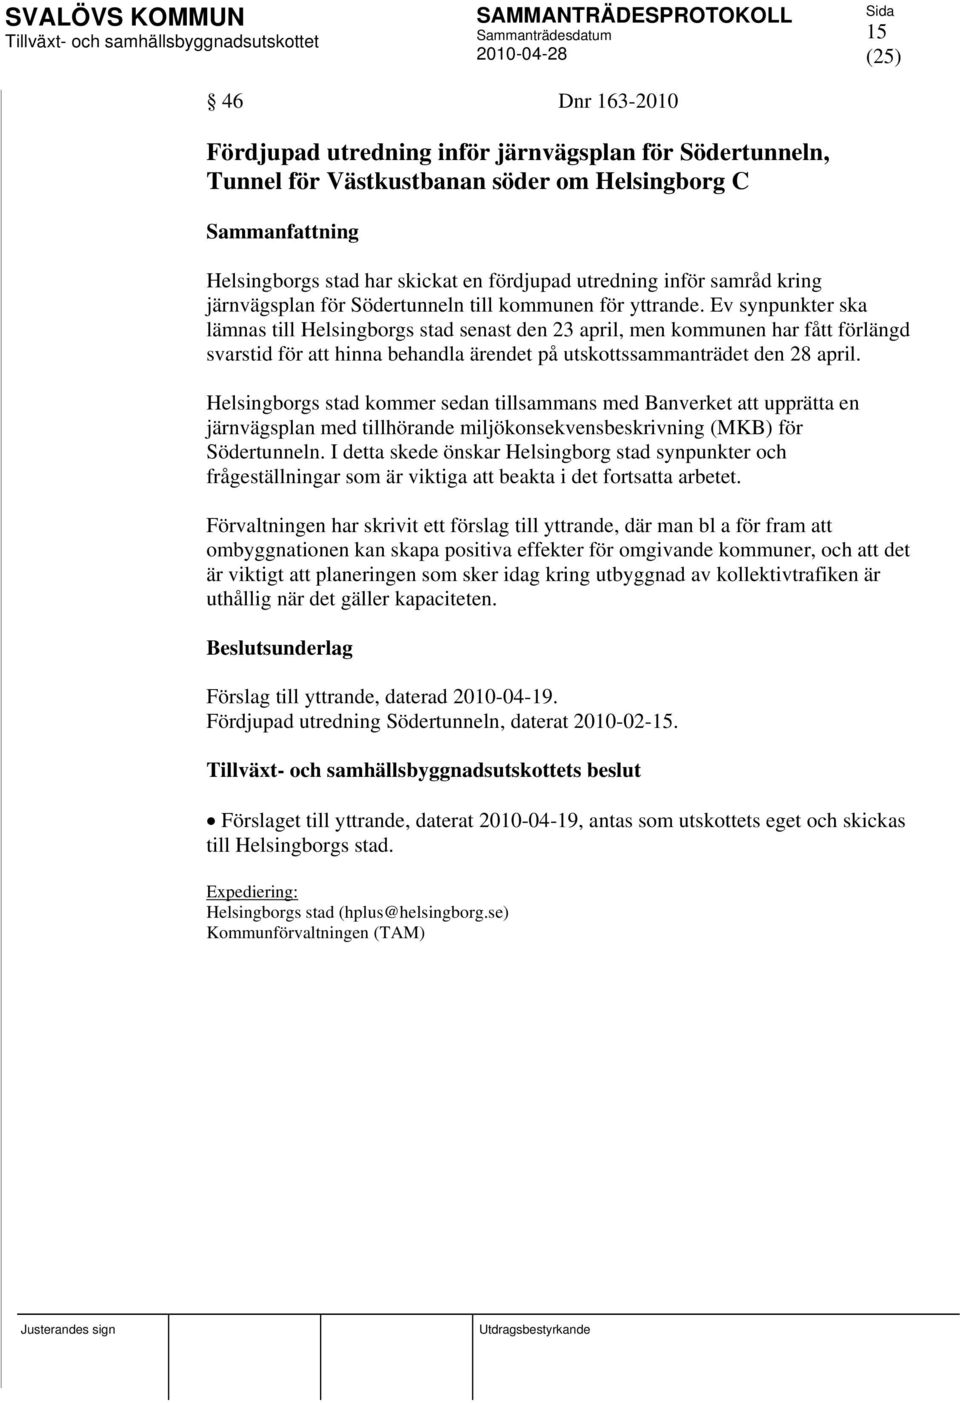 Ev synpunkter ska lämnas till Helsingborgs stad senast den 23 april, men kommunen har fått förlängd svarstid för att hinna behandla ärendet på utskottssammanträdet den 28 april.